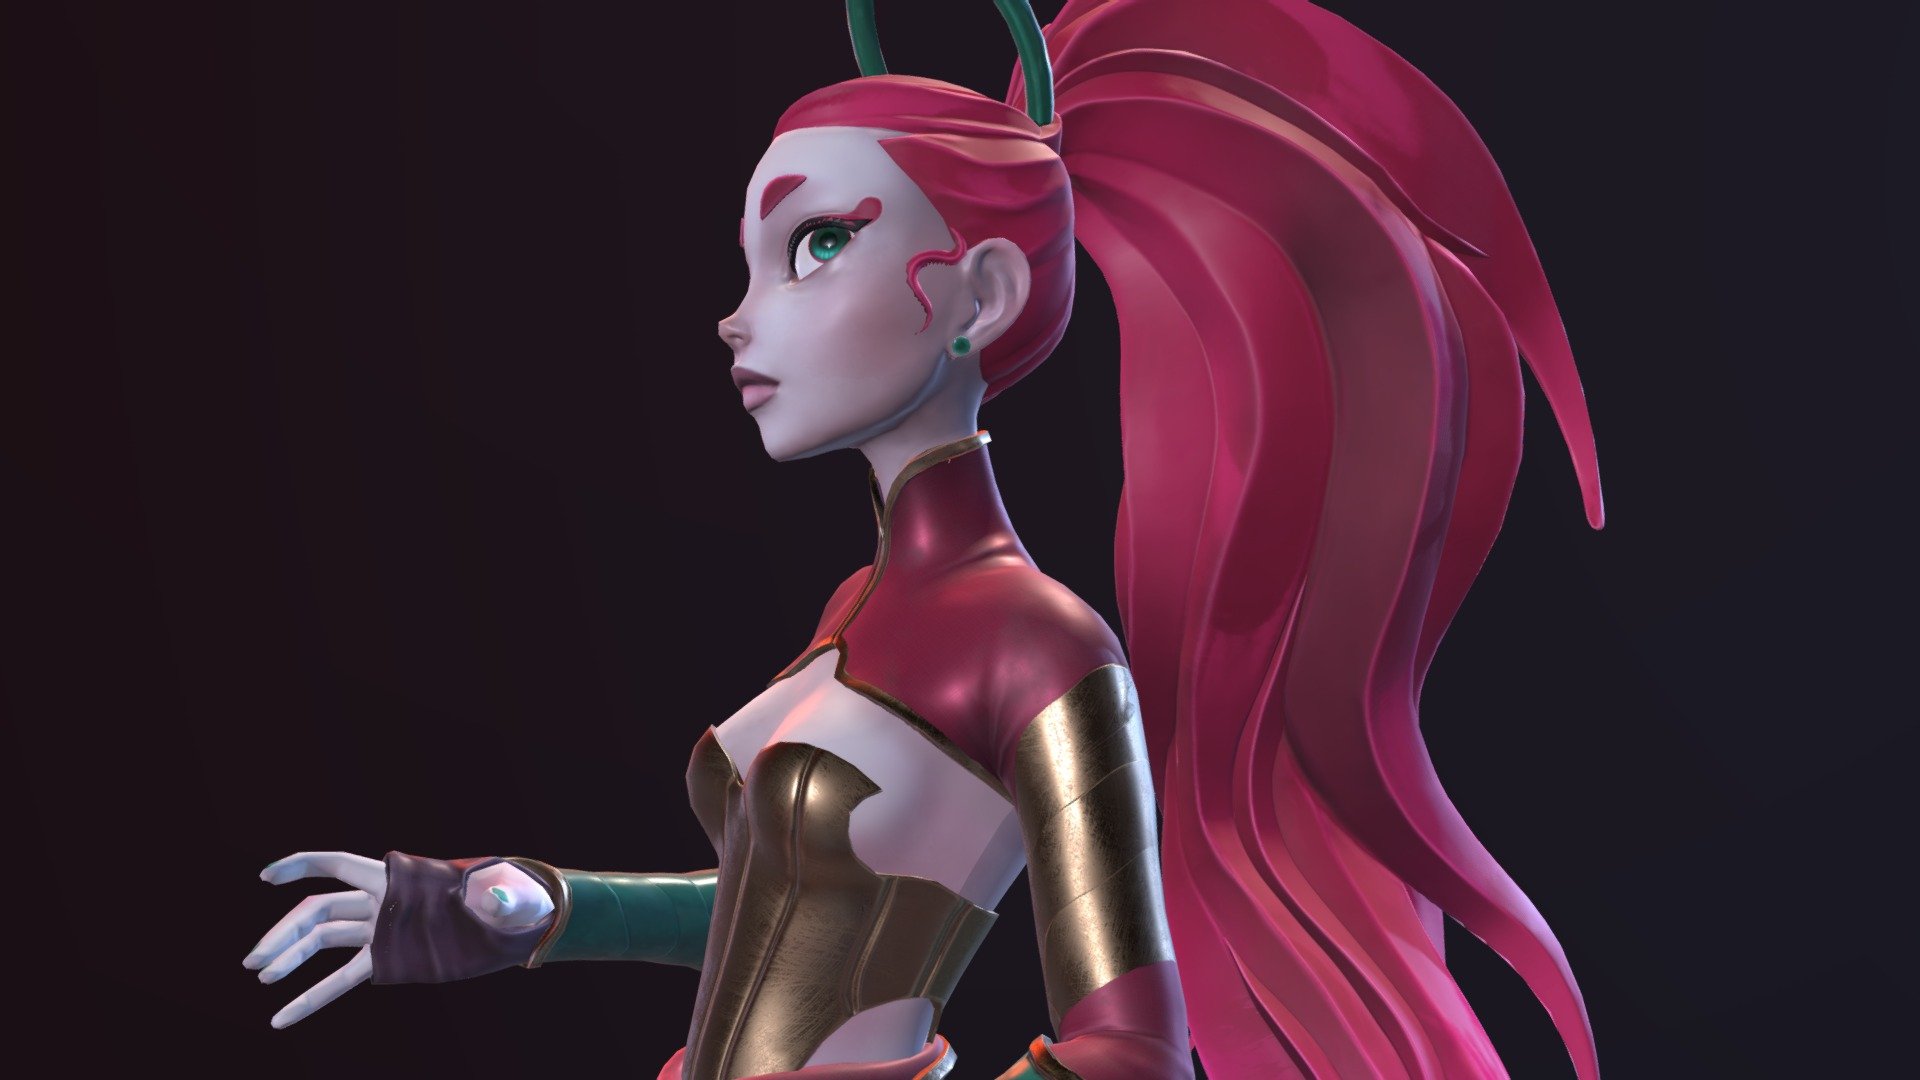 3D Character based on the artwork of Jennifer Park: https://www.artstation.com/artwork/XnVOO0 - Red - 3D model by kmnsaur 3d model